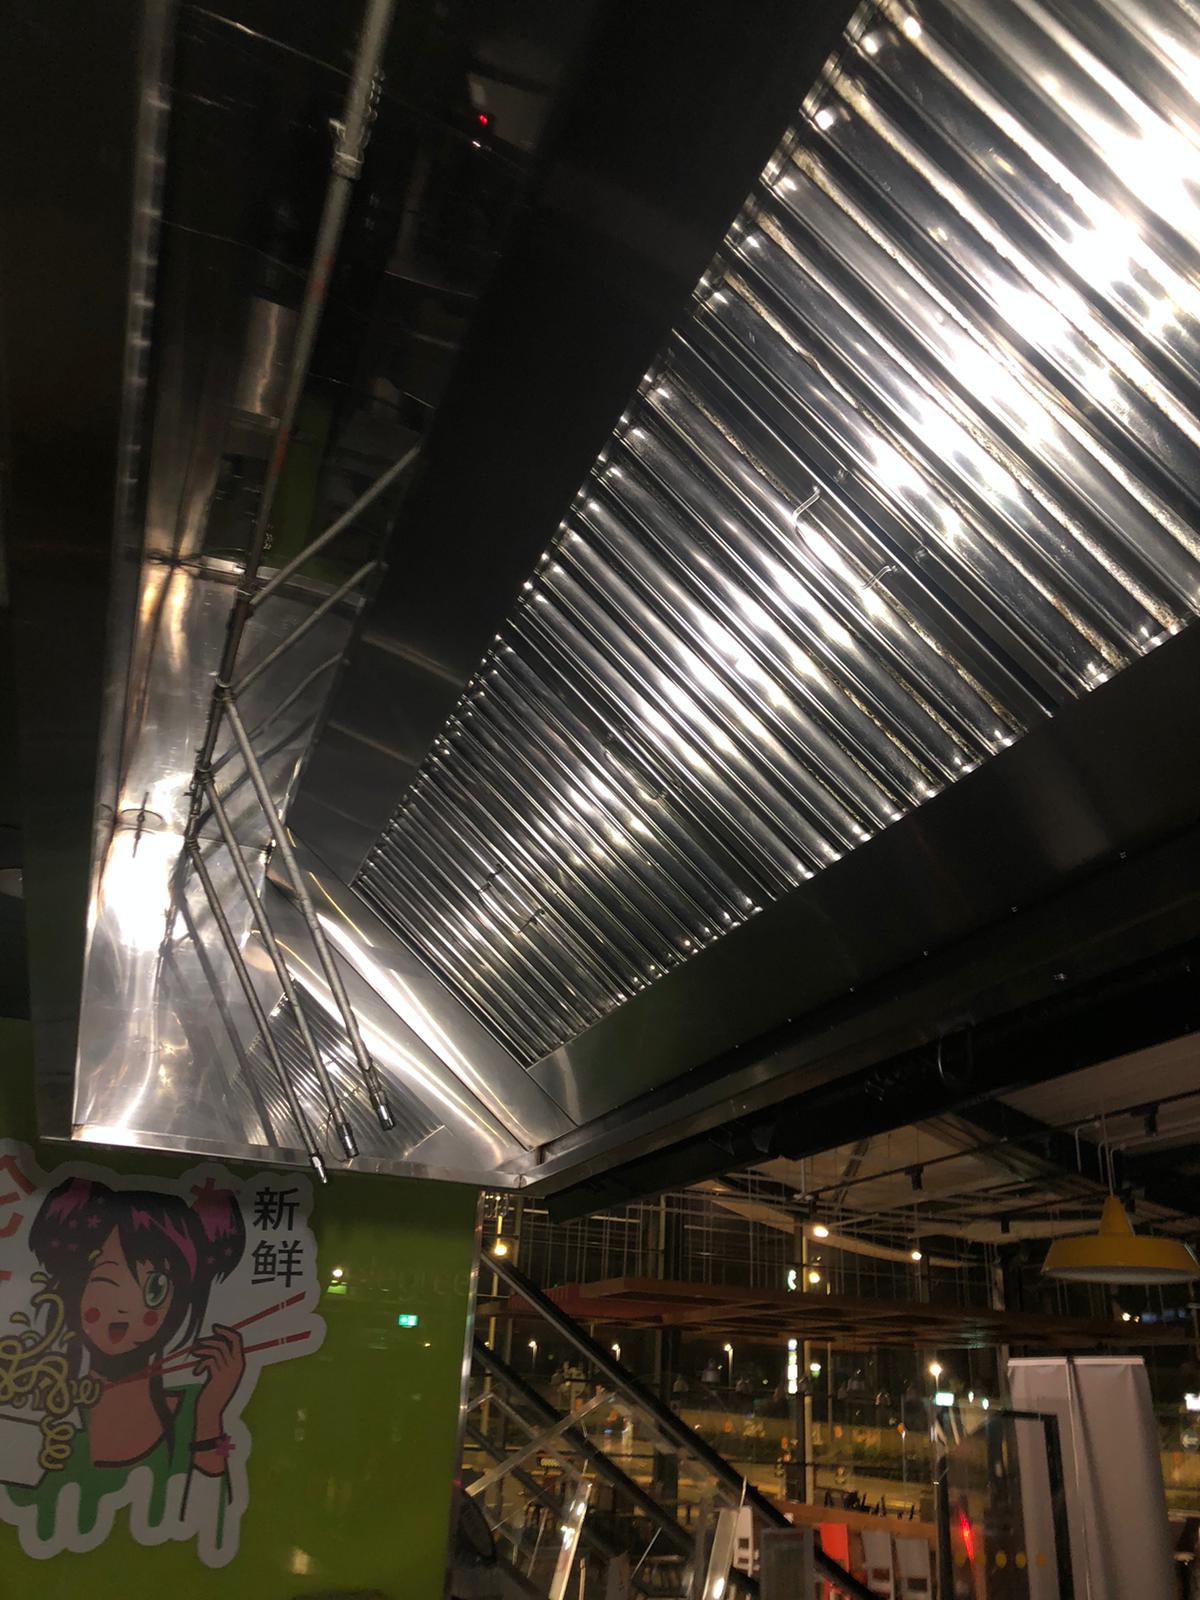 Overhead lighting for food display